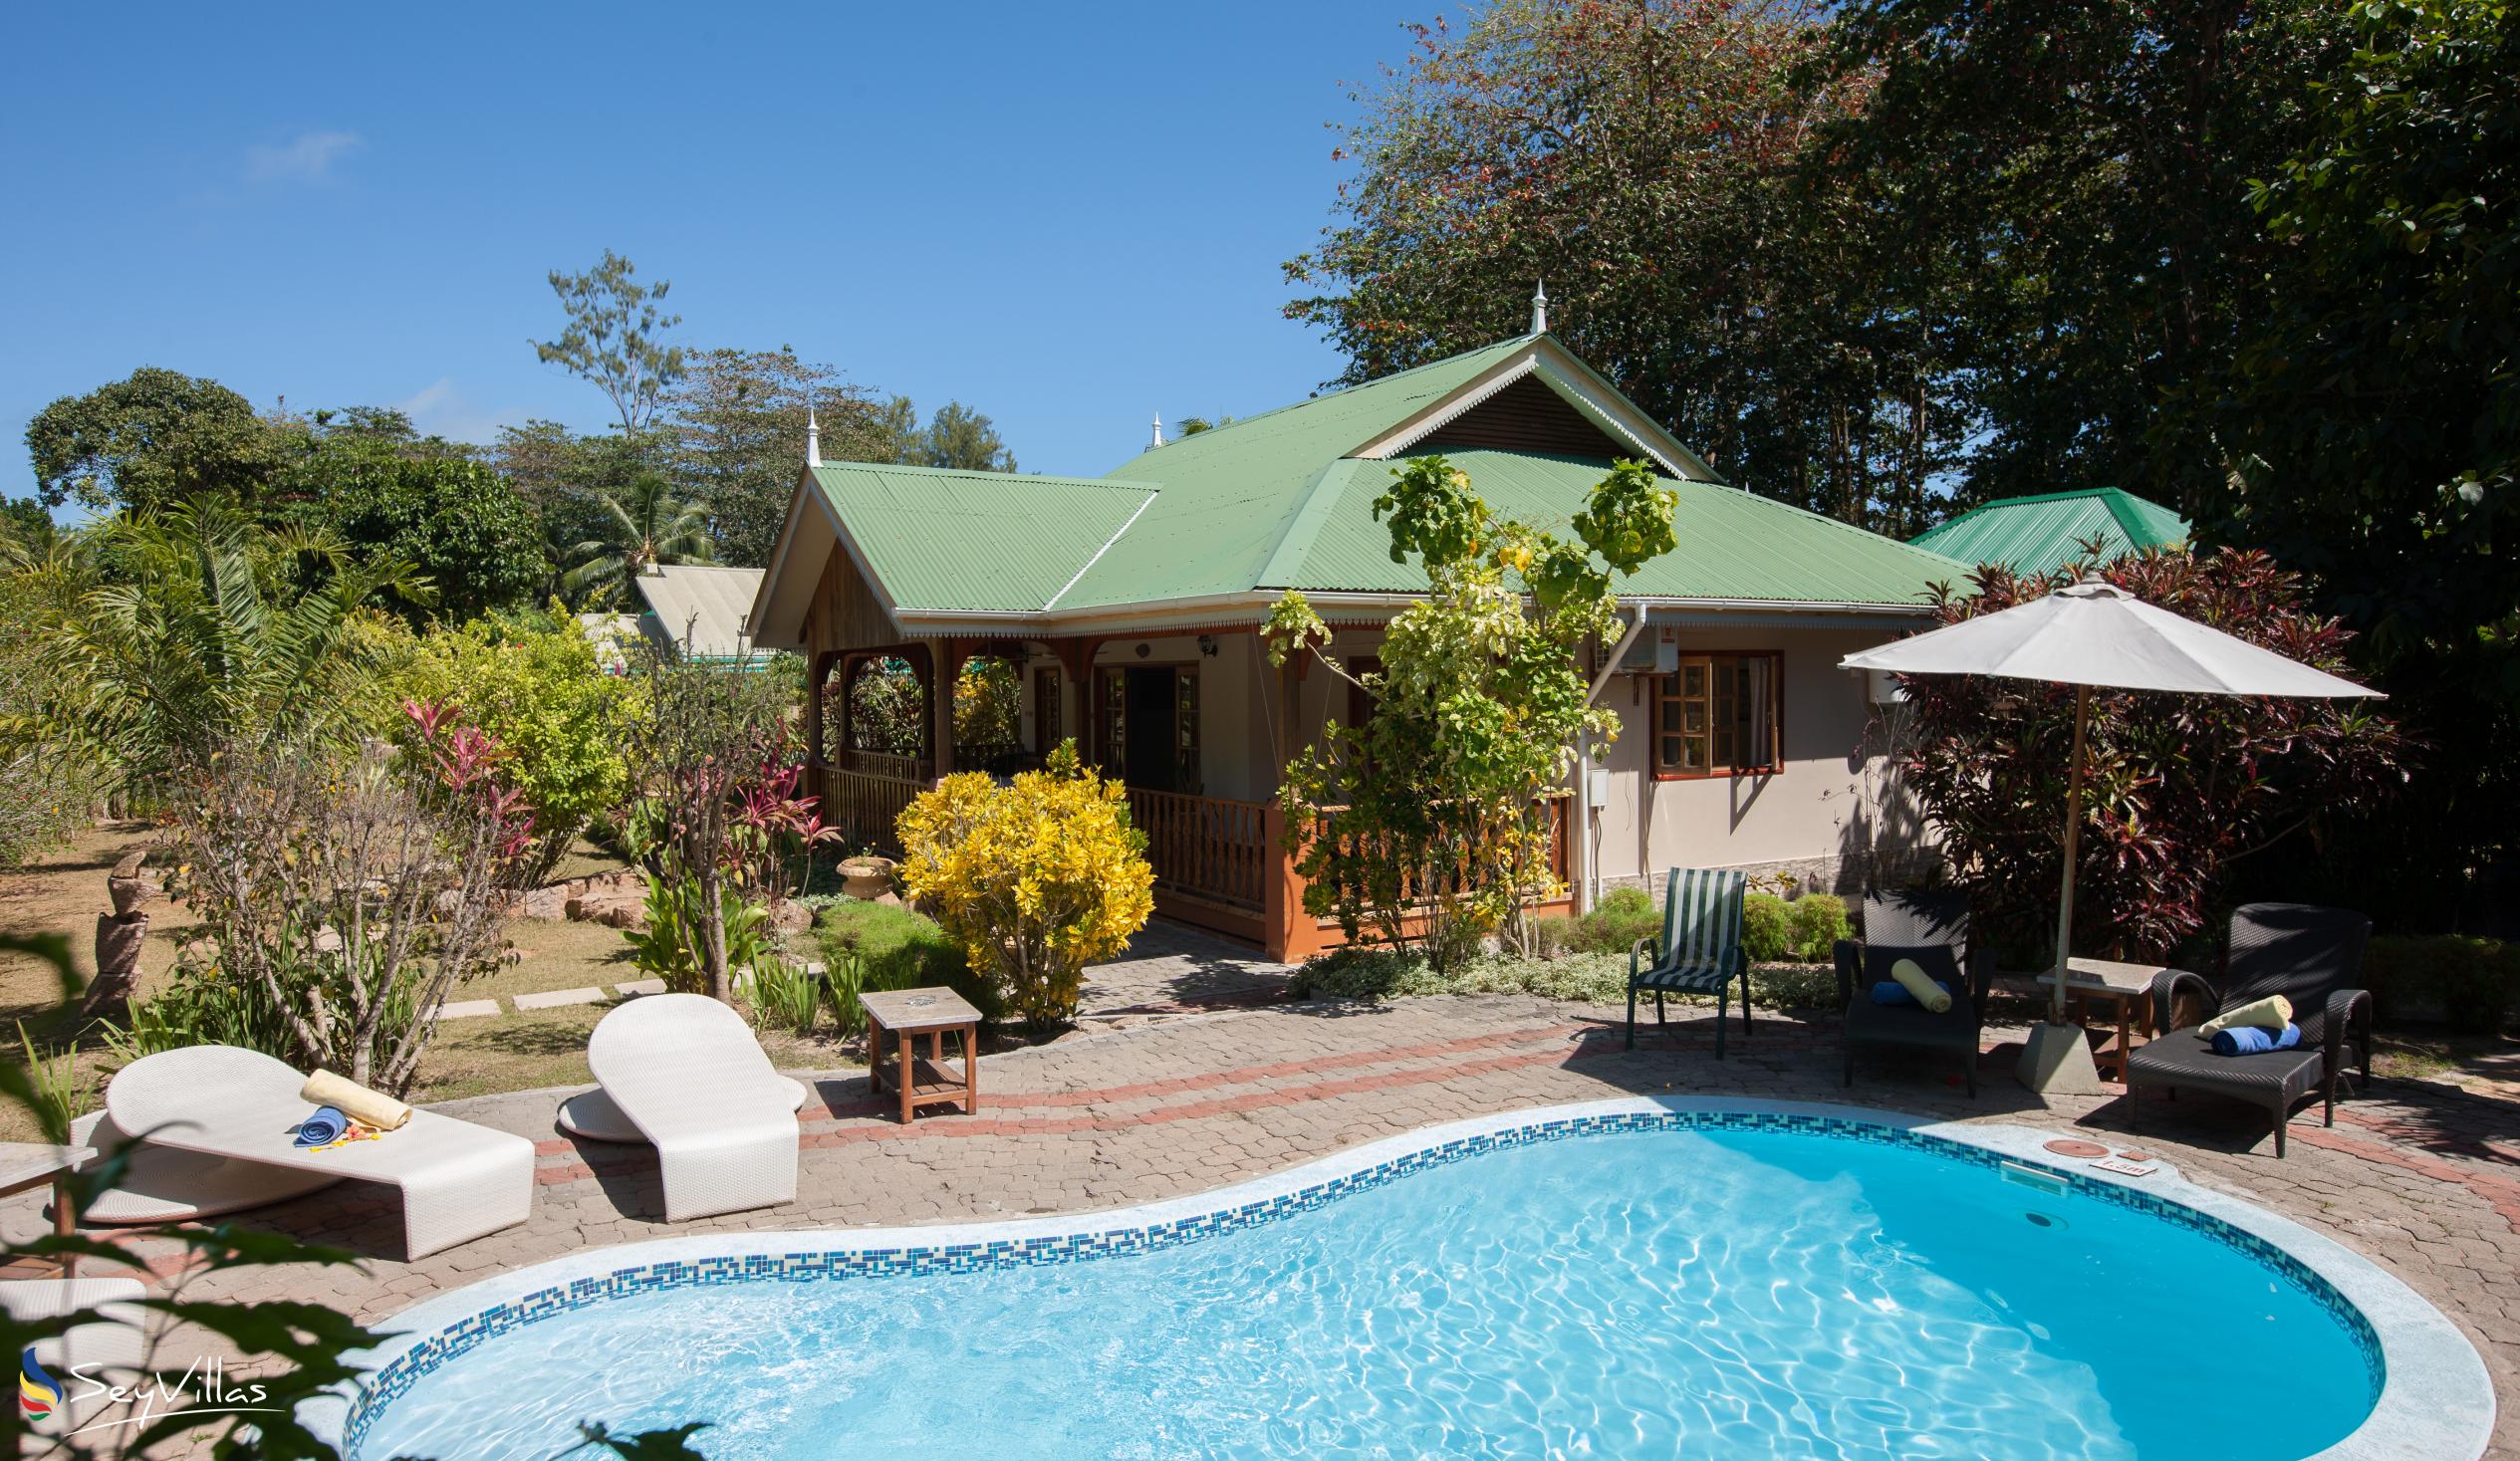 Photo 6: Casa de Leela - Outdoor area - La Digue (Seychelles)